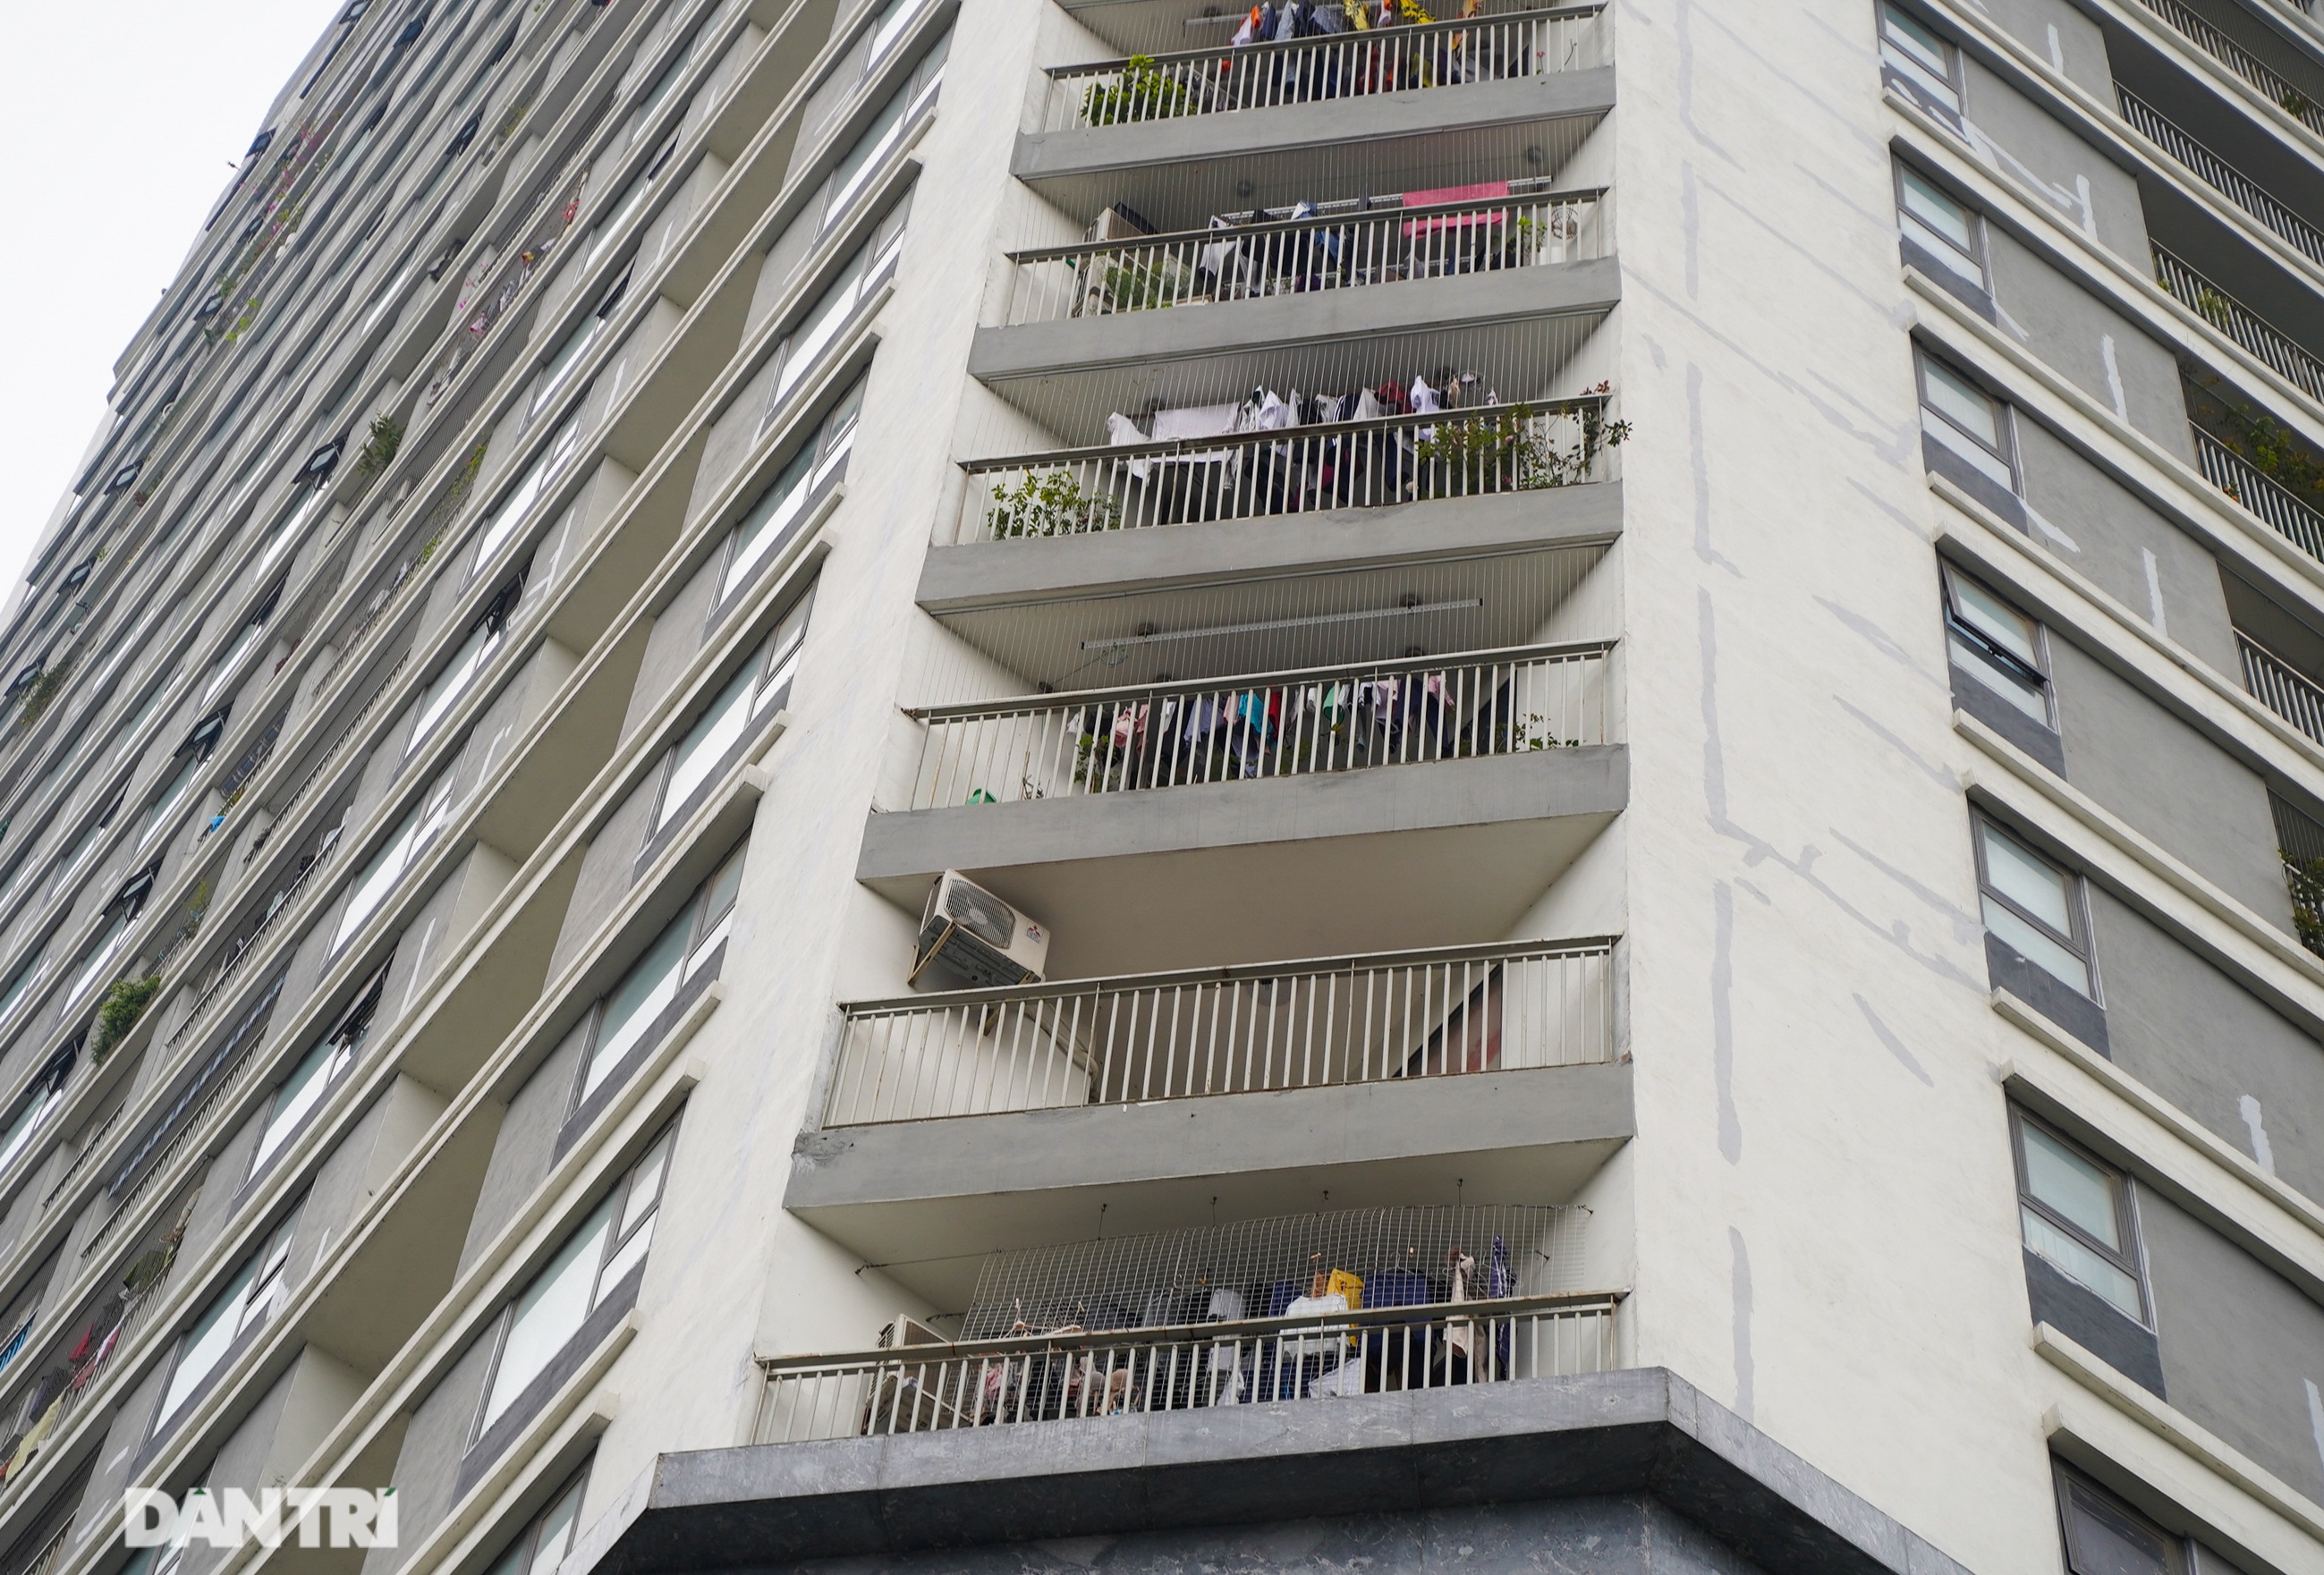 Lưới an toàn ban công được lắp đặt như thế nào tại các chung cư ở Hà Nội - 19